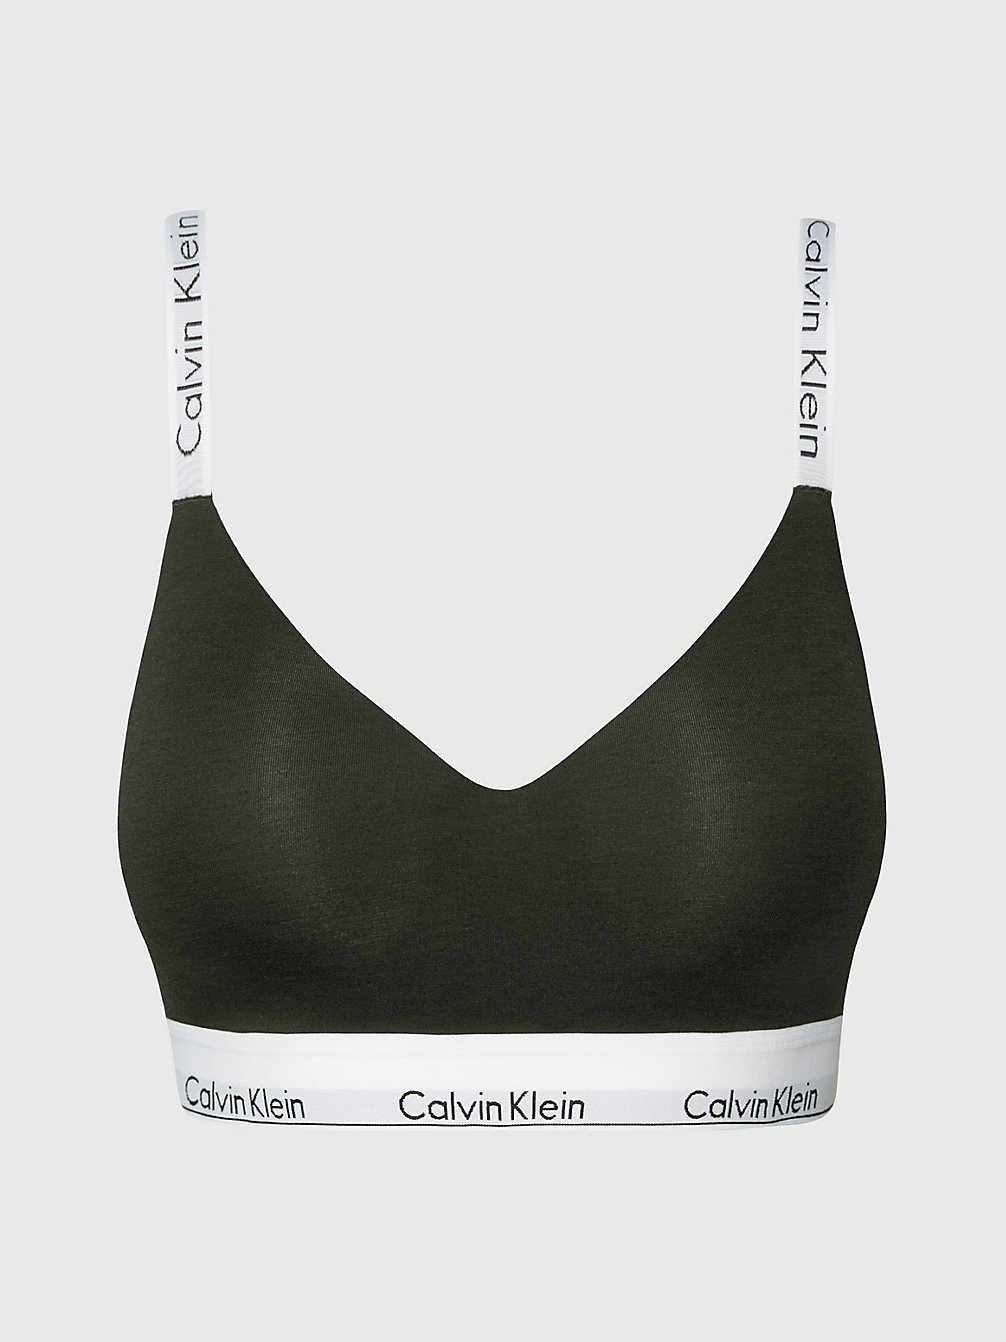 Brassière Coppa Piena - Modern Cotton > FIELD OLIVE > undefined donna > Calvin Klein